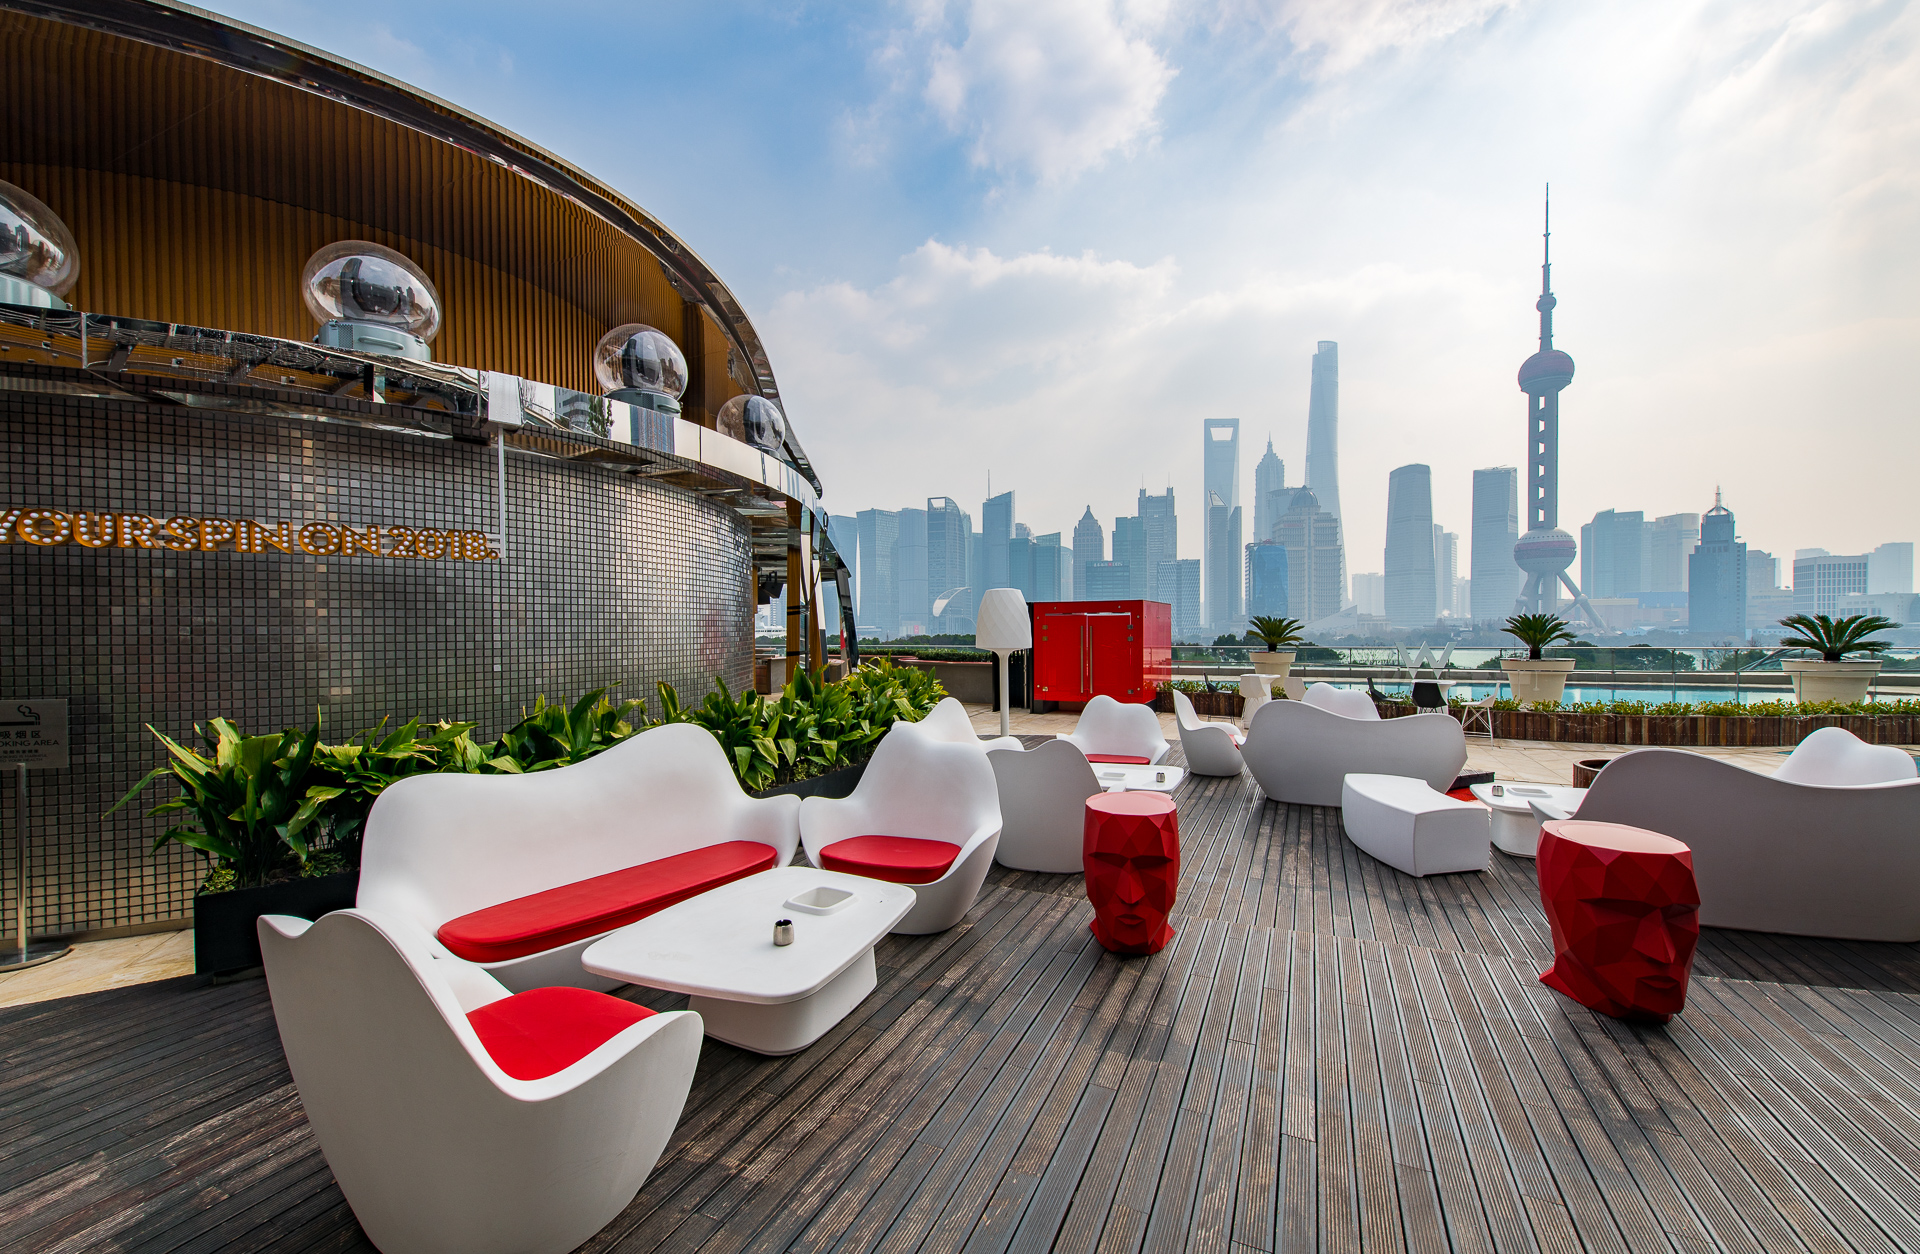 上海外滩W 酒店-美尚奖项目展示-地产线-全球设计生活美学平台